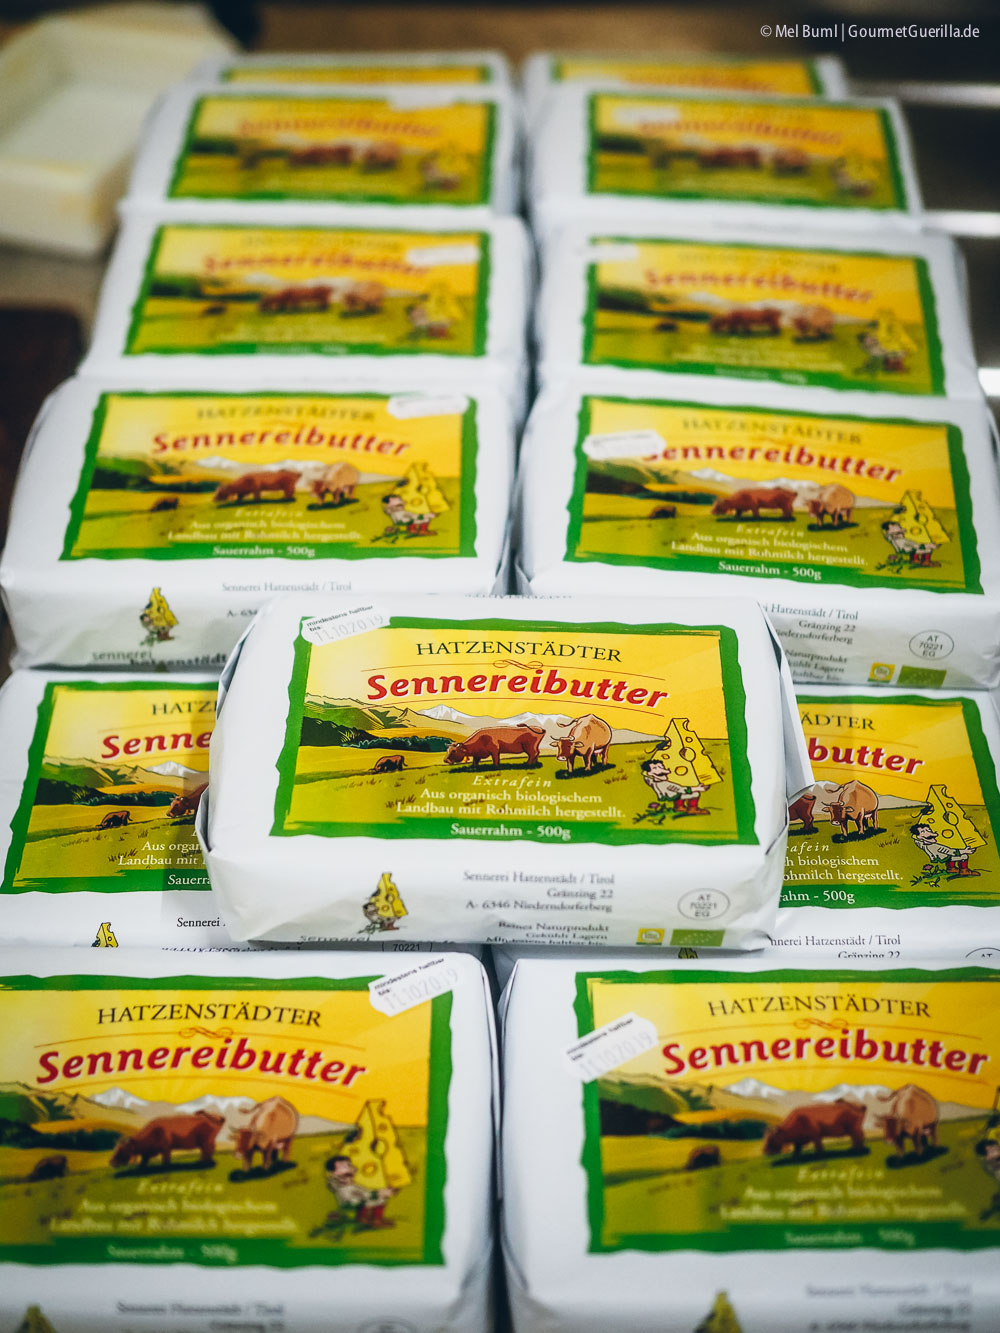 Die fliegenden Milchkannen der Bio-Sennerei Hatzernstaedt Heumilch g.t.S. #sennermeetsblogger | GourmetGuerilla.de